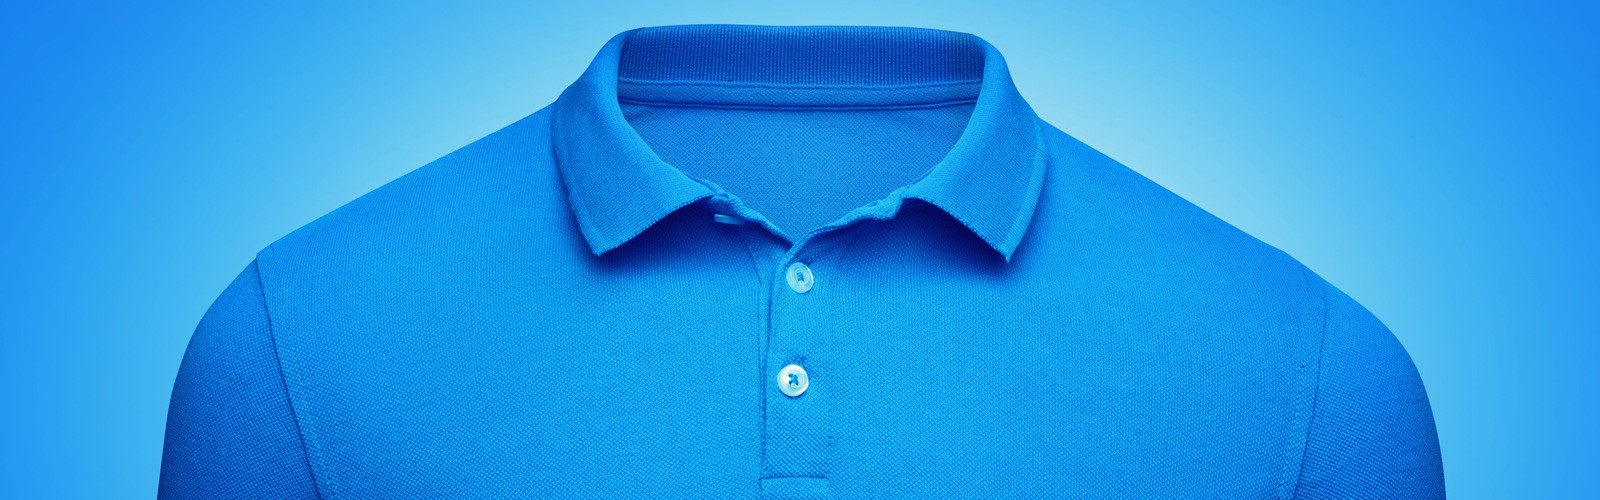 Polo-Shirt (photo by Dzha33 / Shutterstock.com)